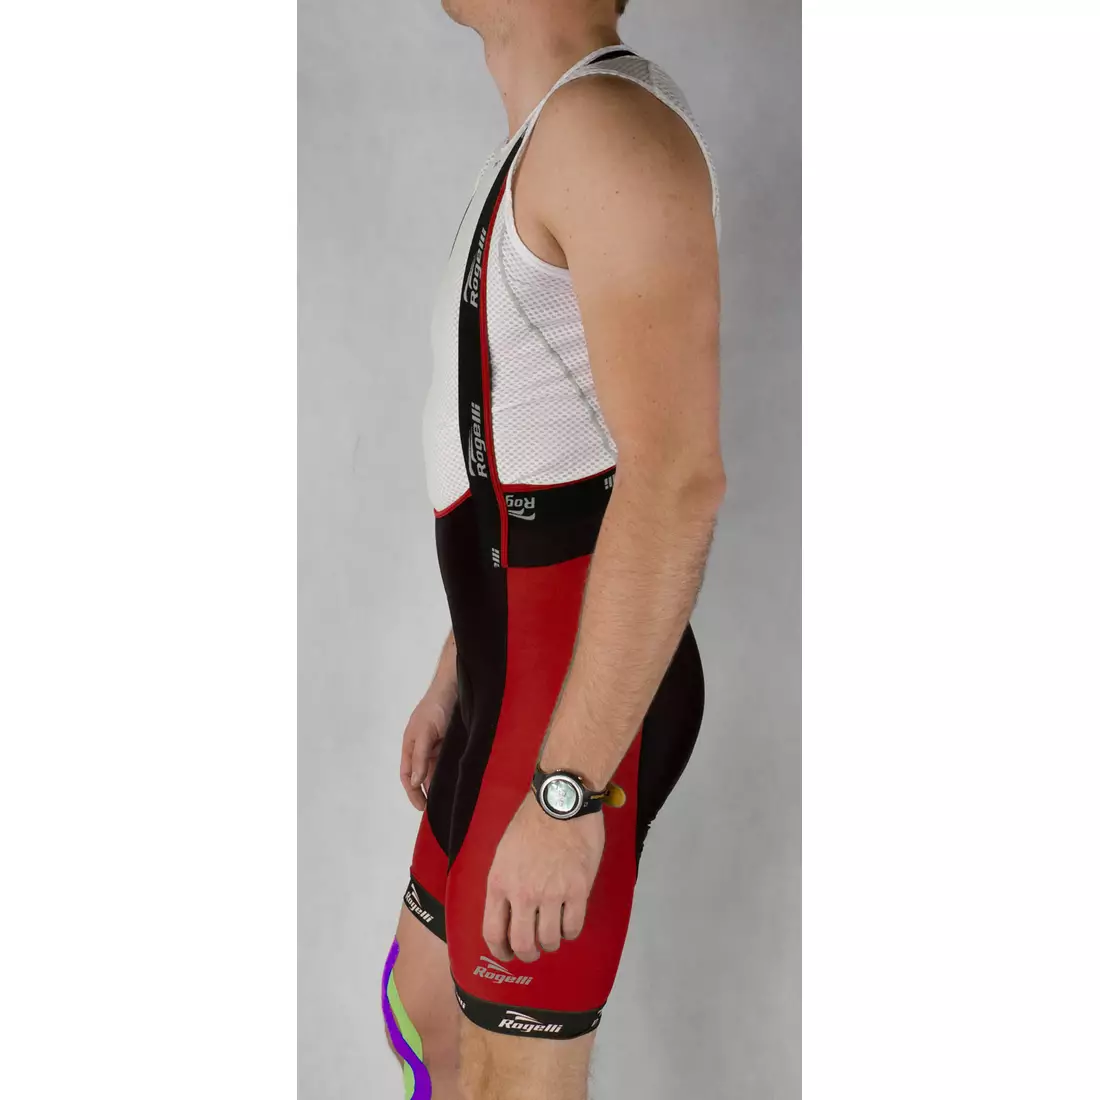 ROGELLI PORCARI - férfi kantáros rövidnadrág, színe: fekete és piros